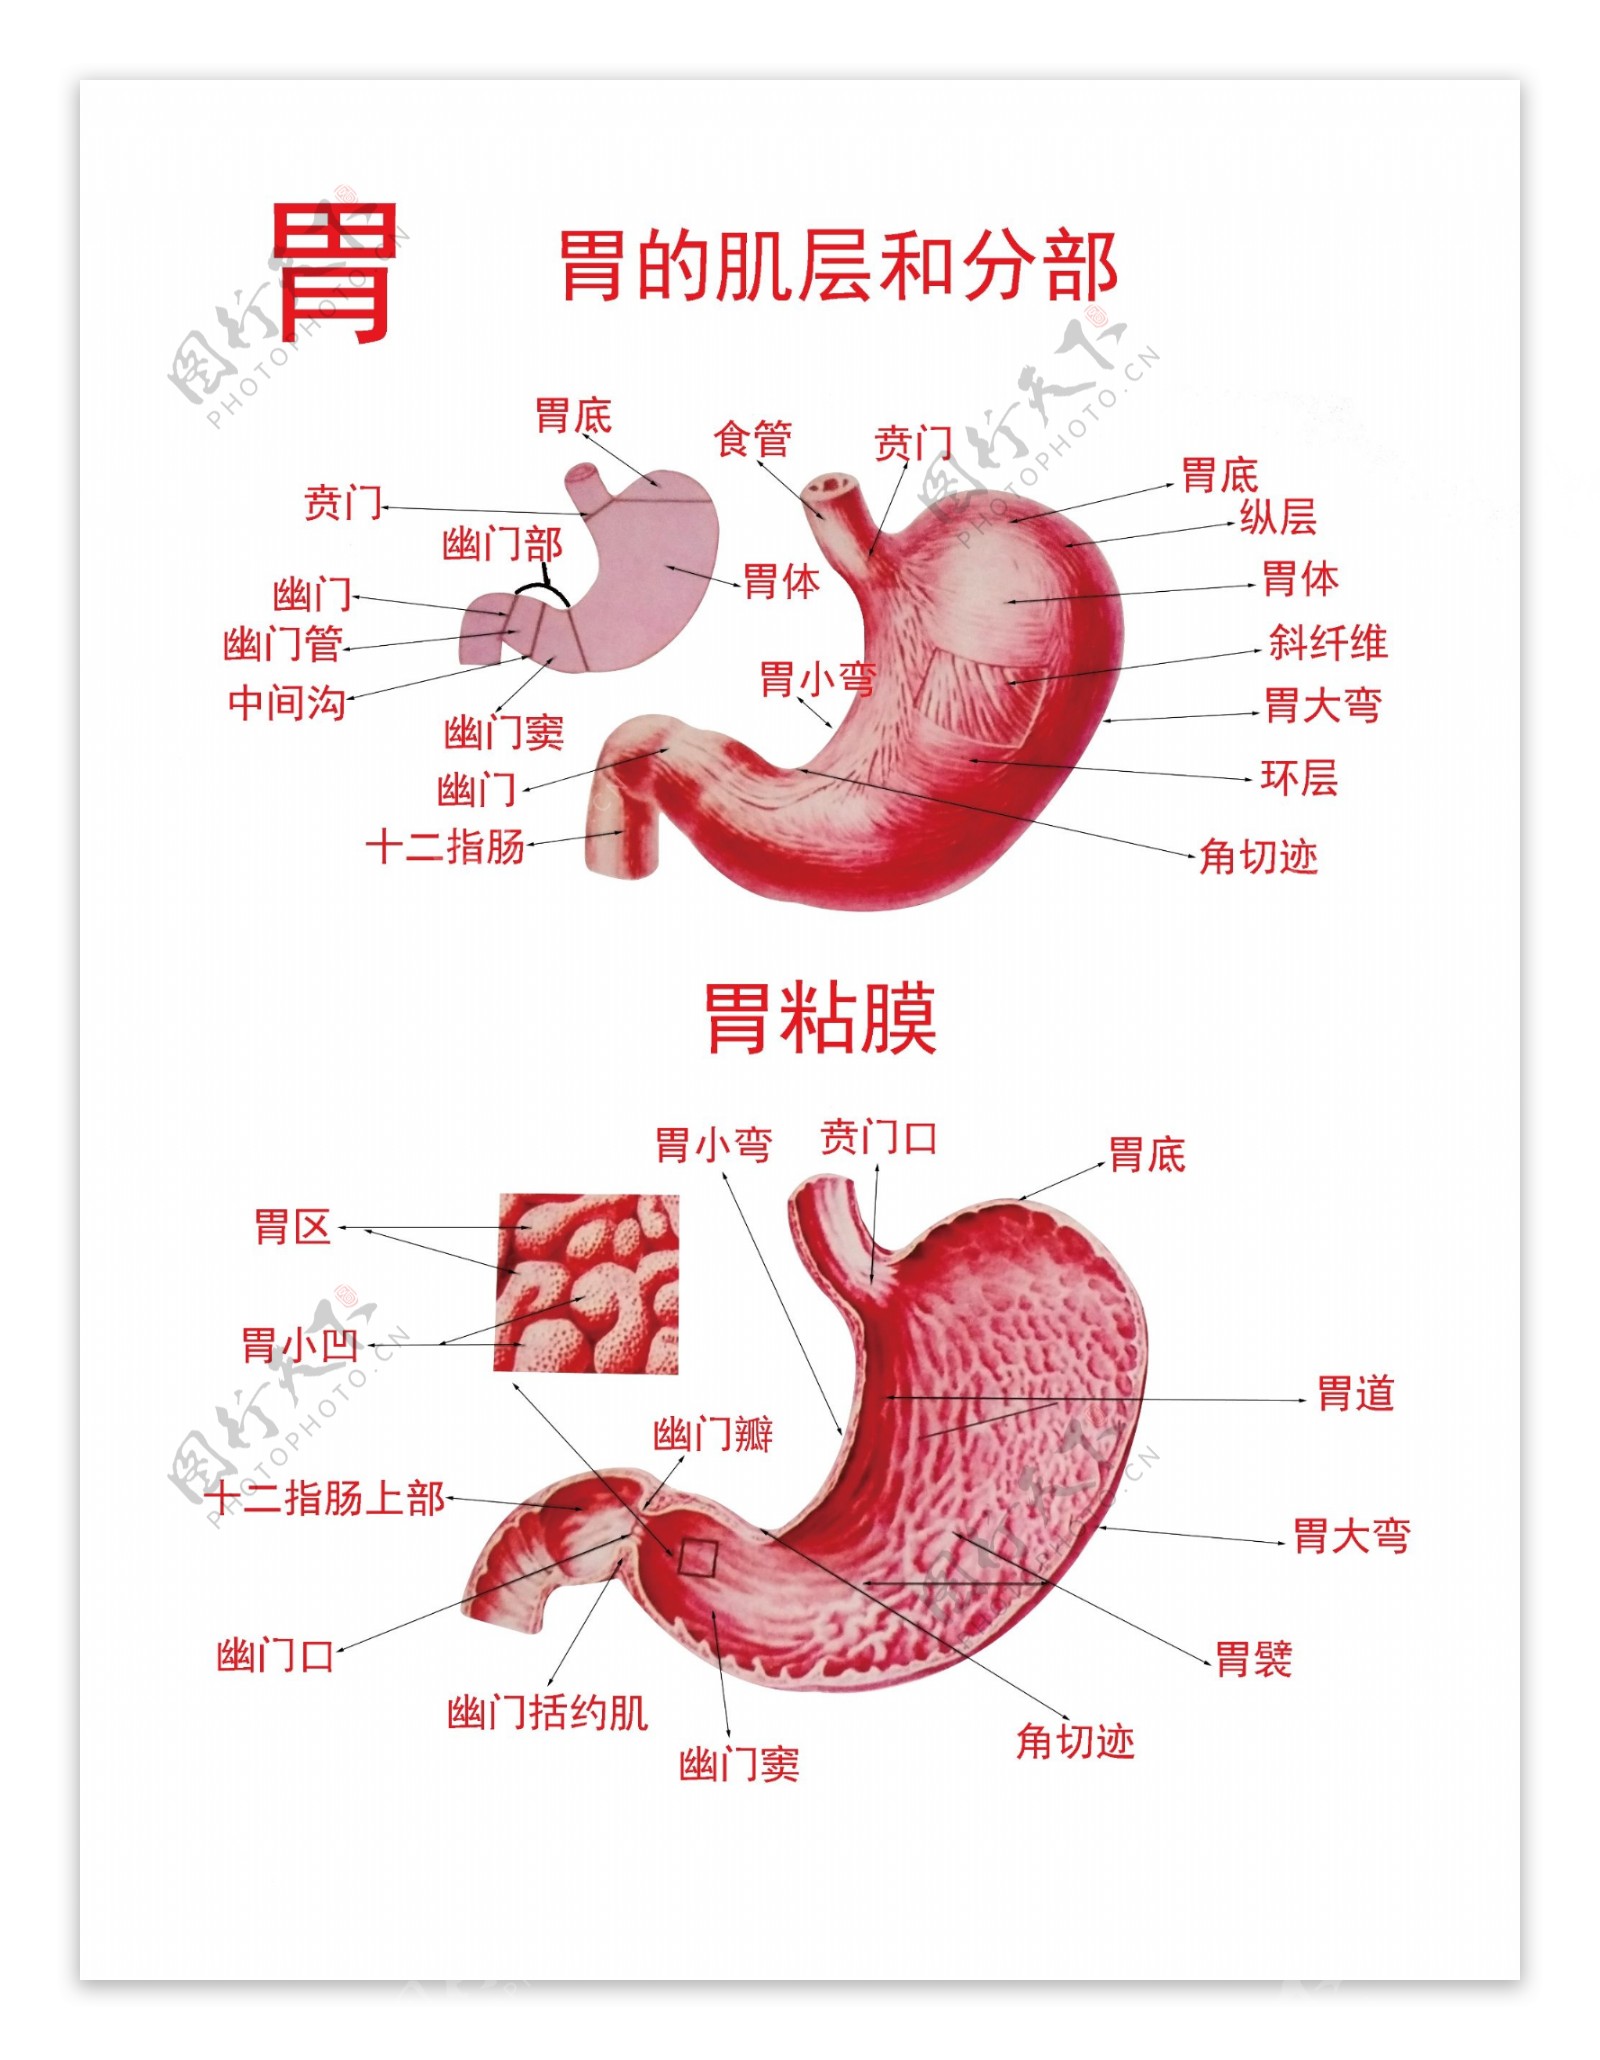 胃的肌层和分部